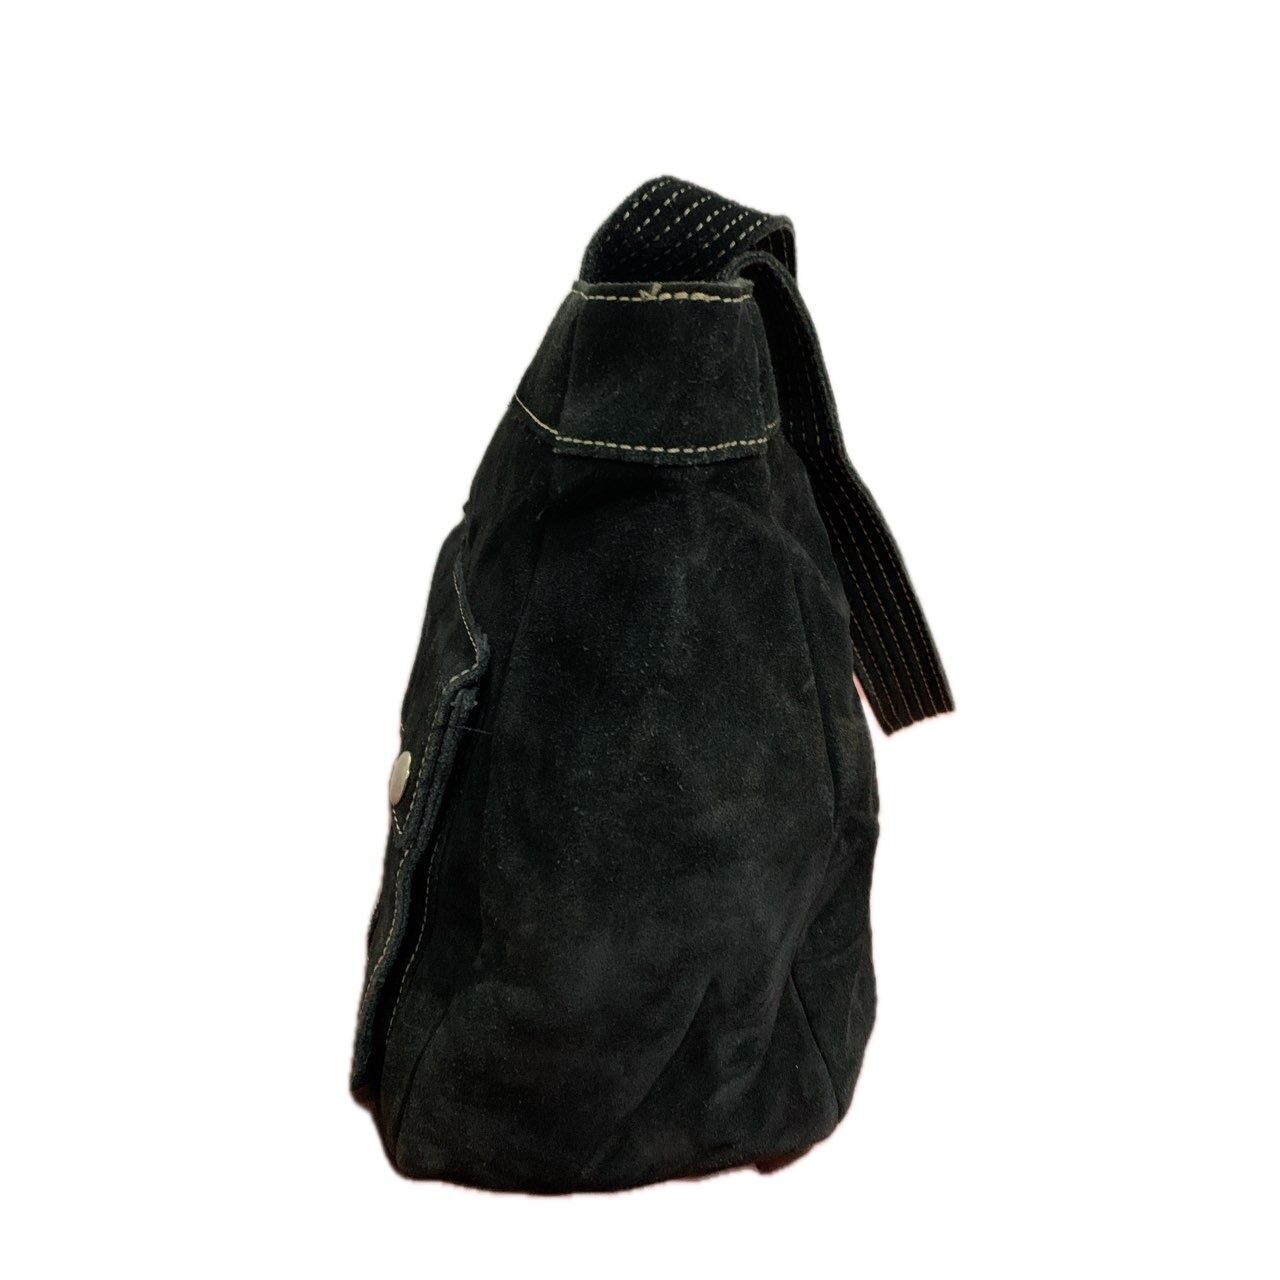 Banana Republic Black Shoulder Bag